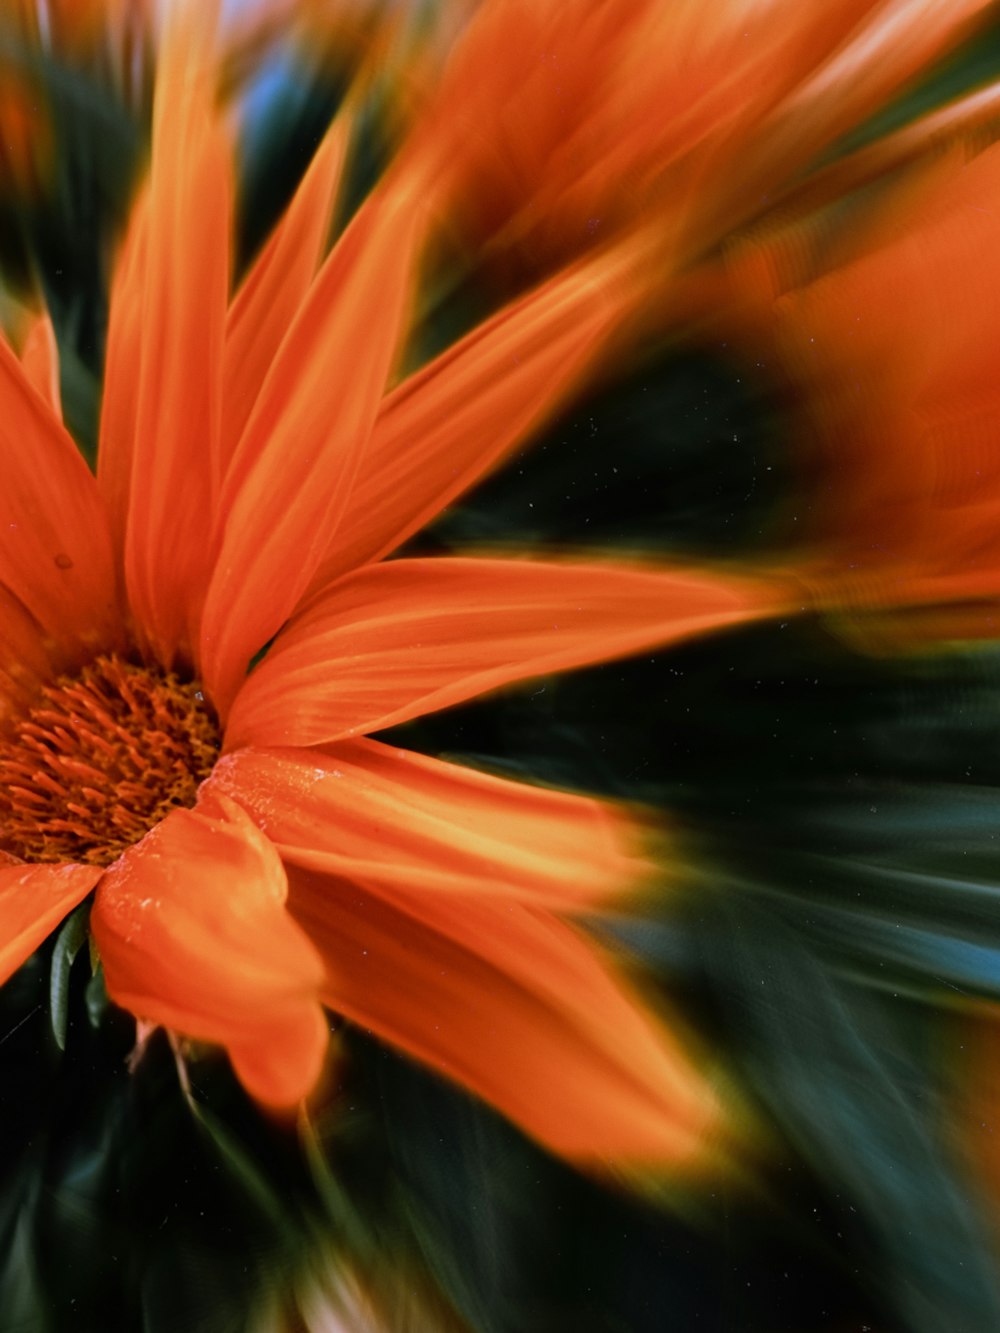 um close up de uma flor laranja com um fundo desfocado